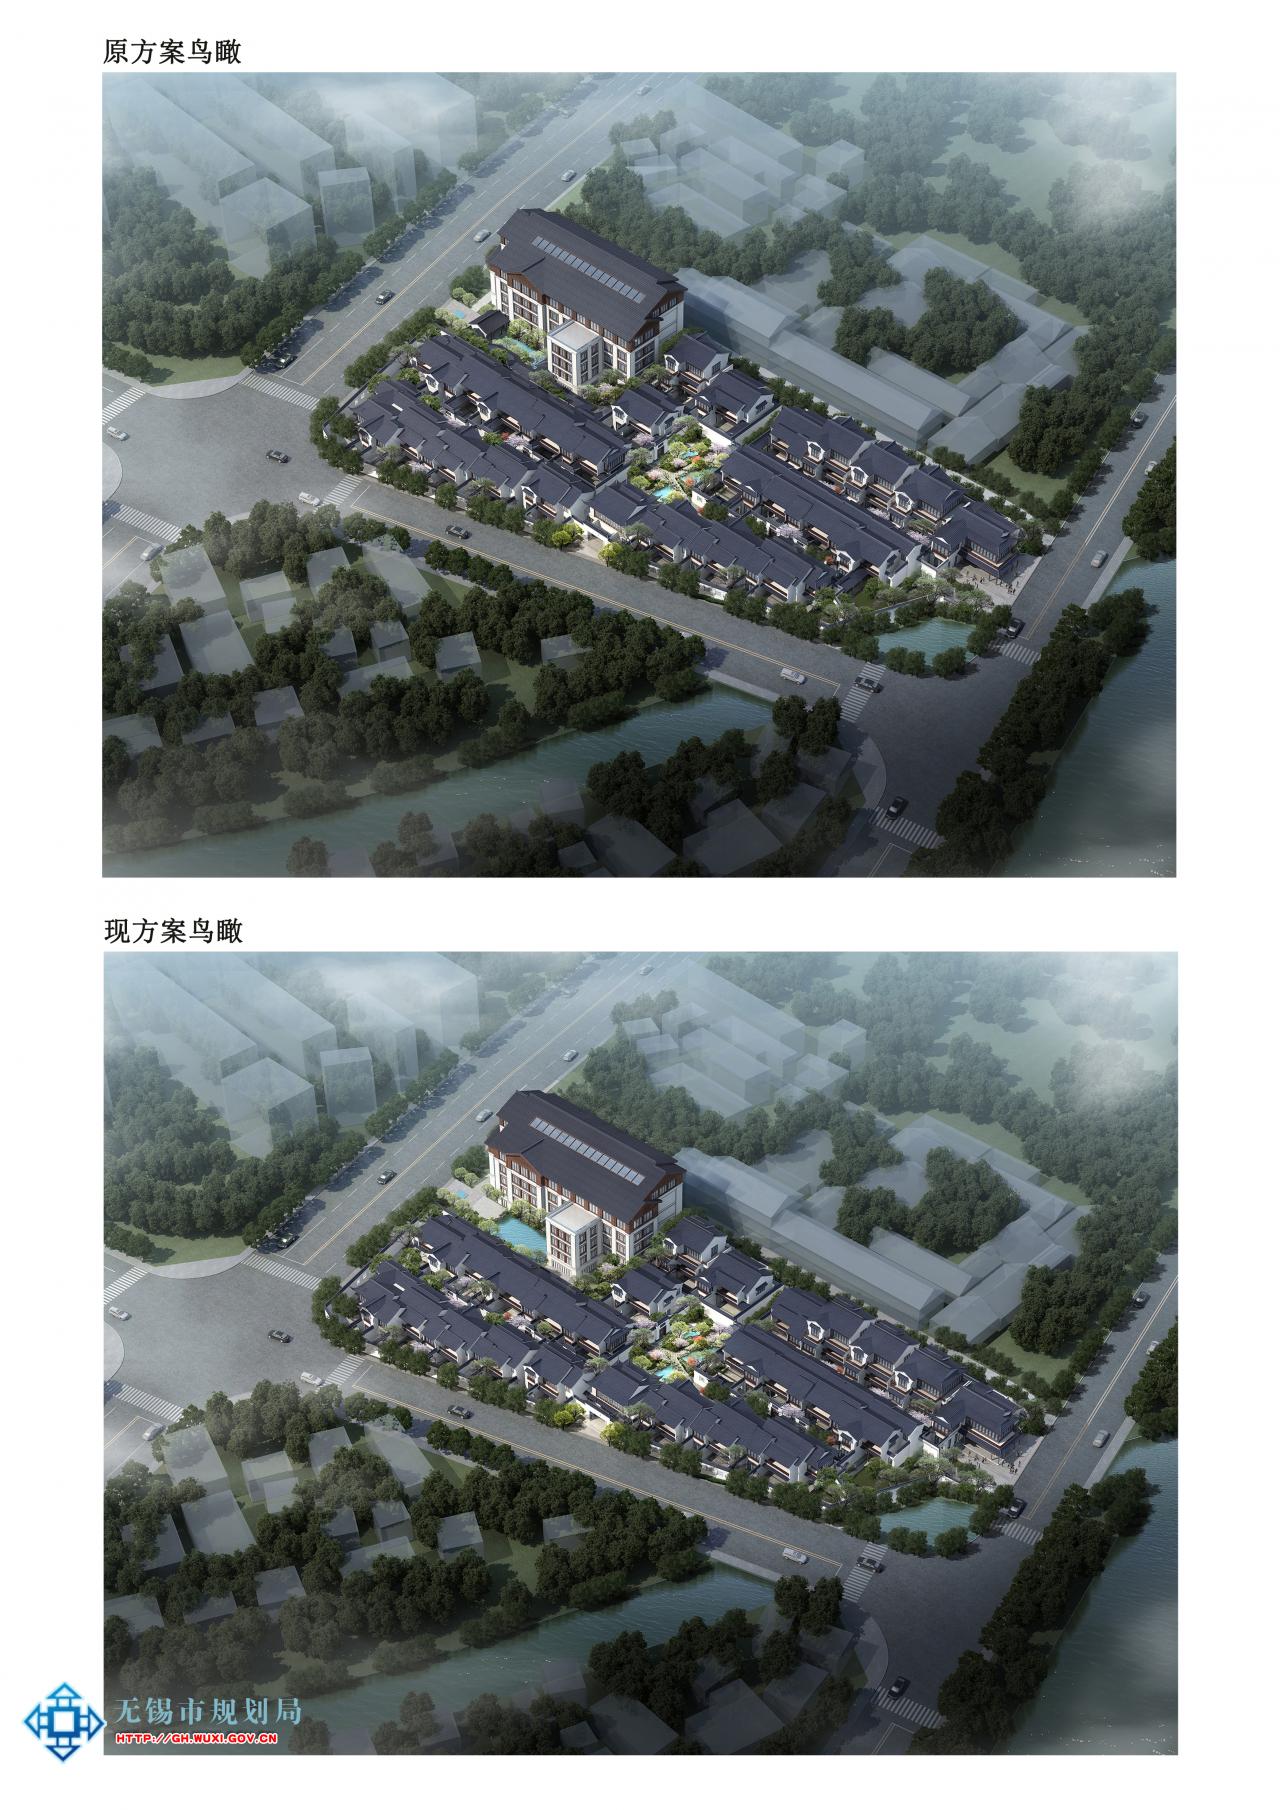 XDG-2013-13号地块开发建设项目规划（建筑）设计方案（变更）批前公示